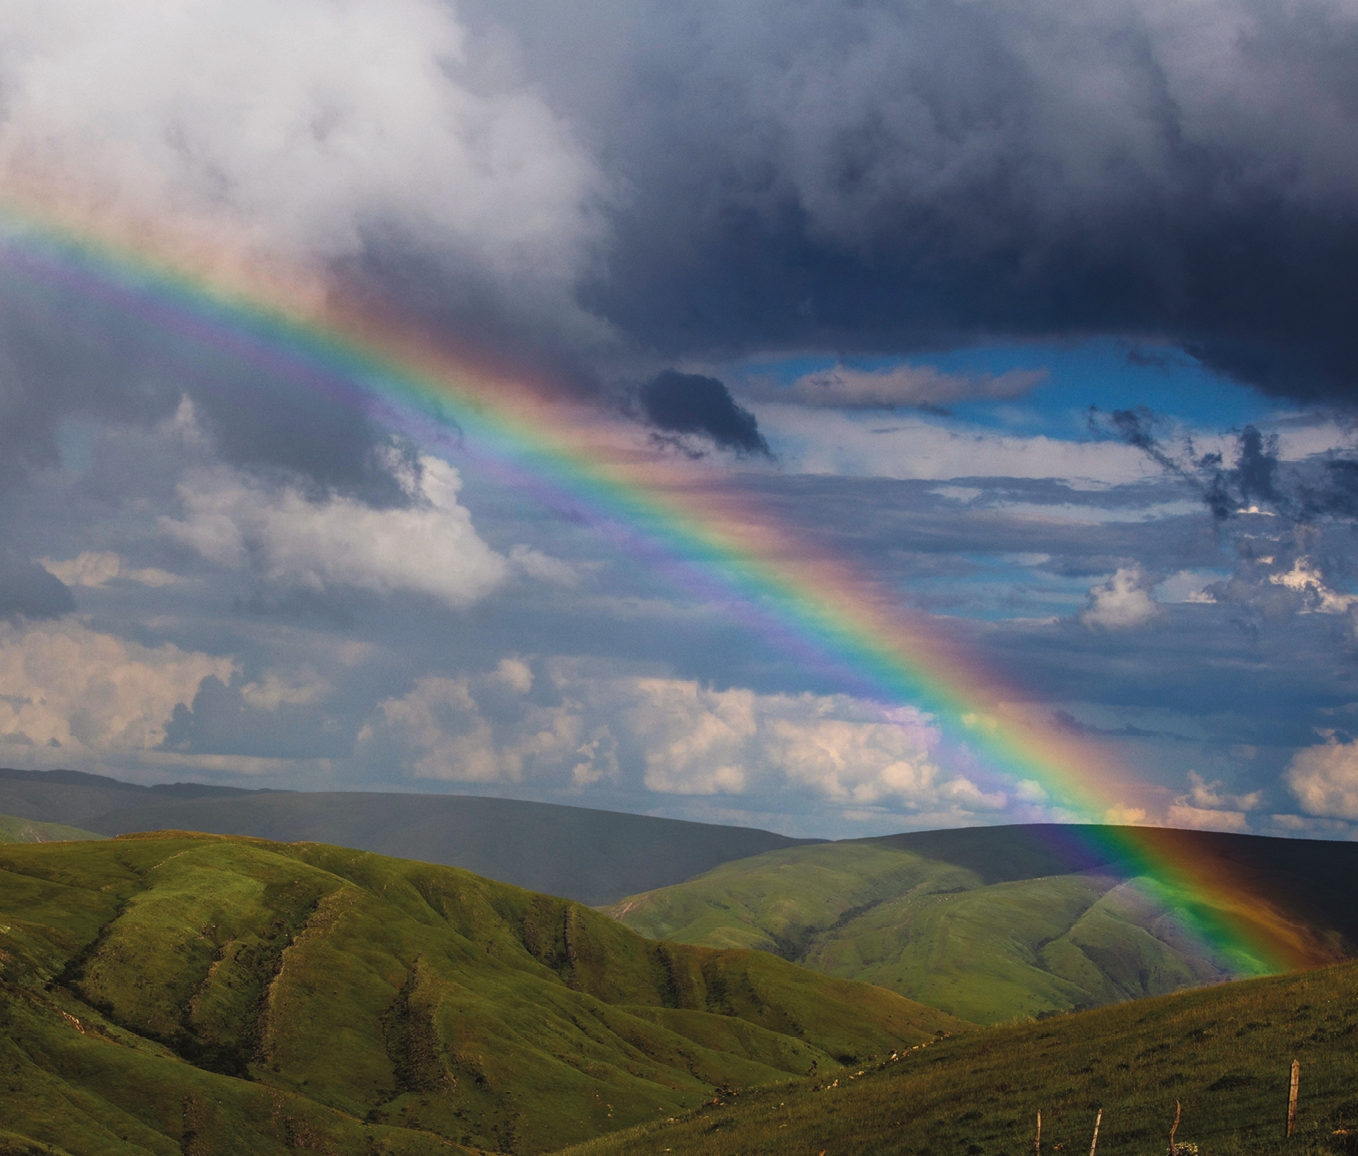 Fotografia. Um arco-íris atravessa o céu com nuvens escuras e claras até uma montanha coberta por vegetação.